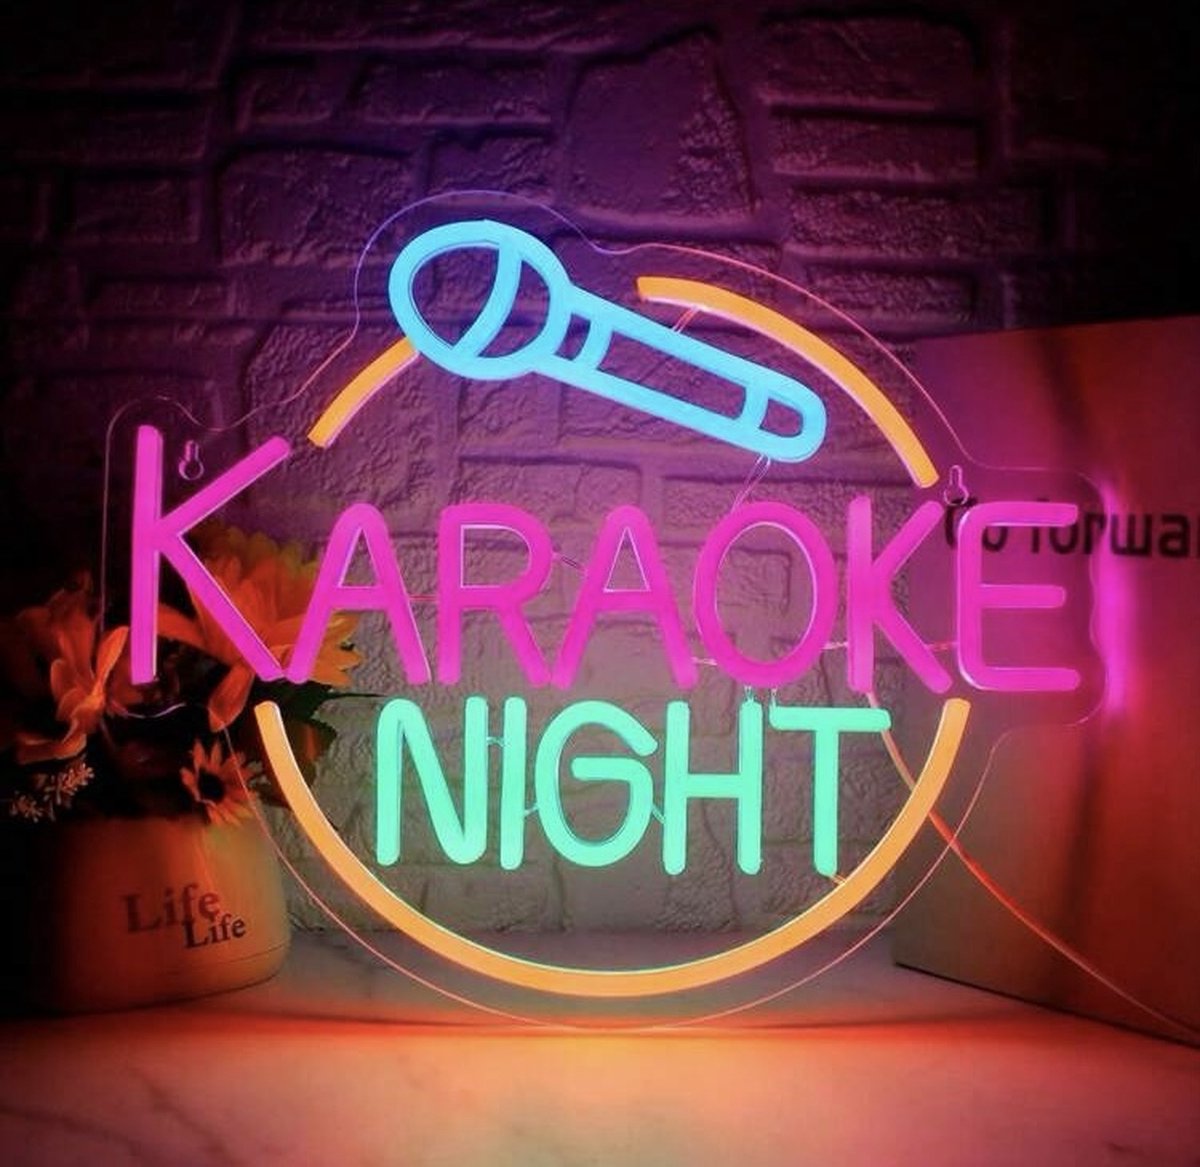 Neon verlichting karaoke - Karaoke - Music - Live music - Dimbaar - Professionele verlichting - Neon wandlamp - Horeca - Neon ligt - Sfeerverlichting - Neonlicht - Neon lamp - Neonverlichting - Neon verlichting - Tafellampen - Verlichting